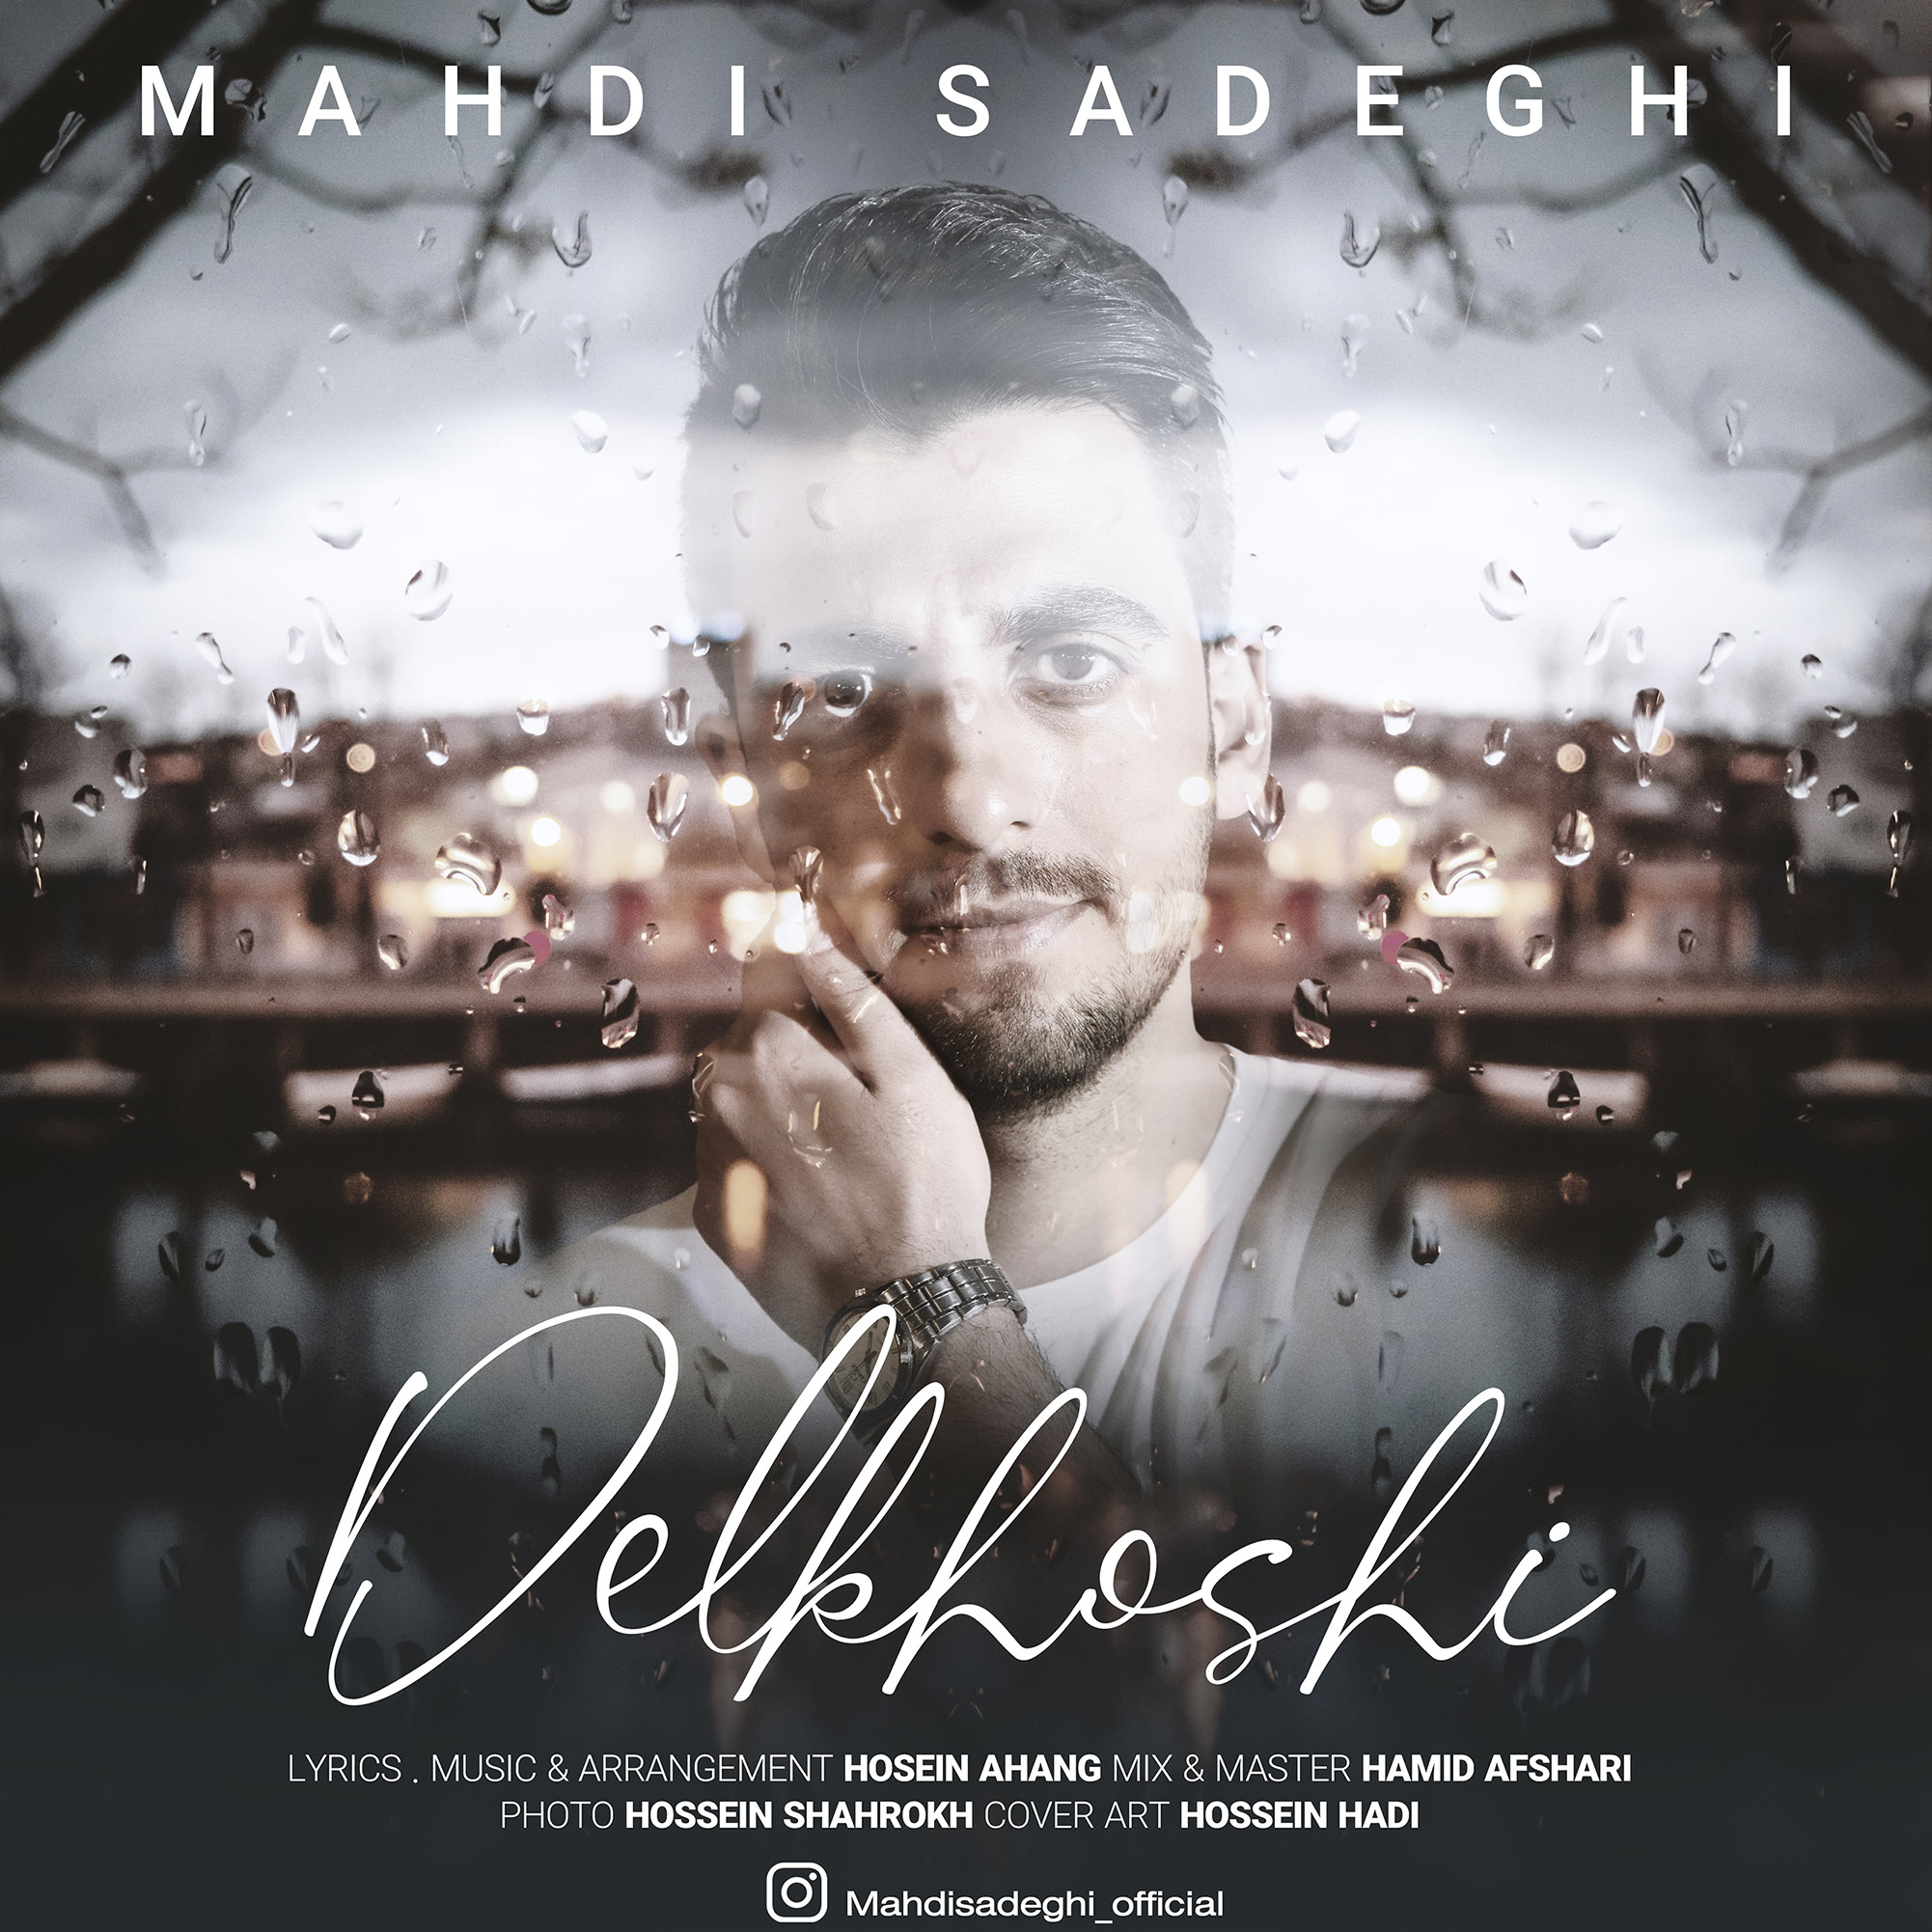  دانلود آهنگ جدید مهدی صادقی - دلخوشی | Download New Music By Mehdi Sadeghi - Delkhoshi